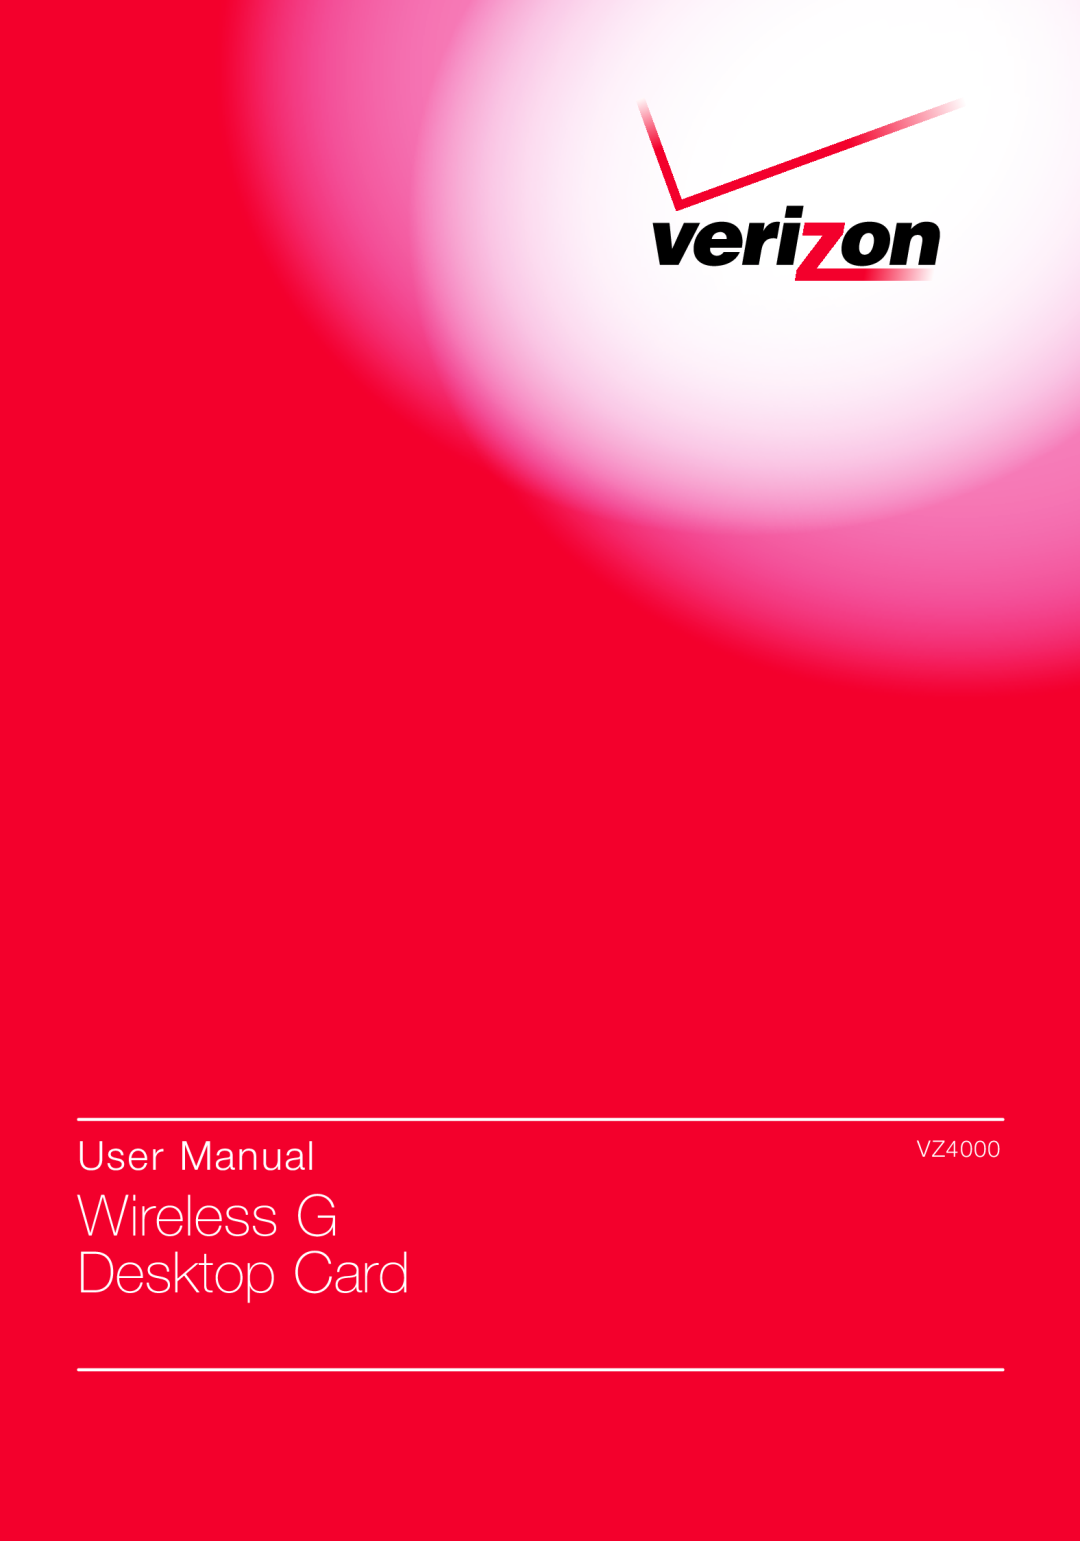 Verizon VZ4000 manual Wireless G Desktop Card, User Manual 